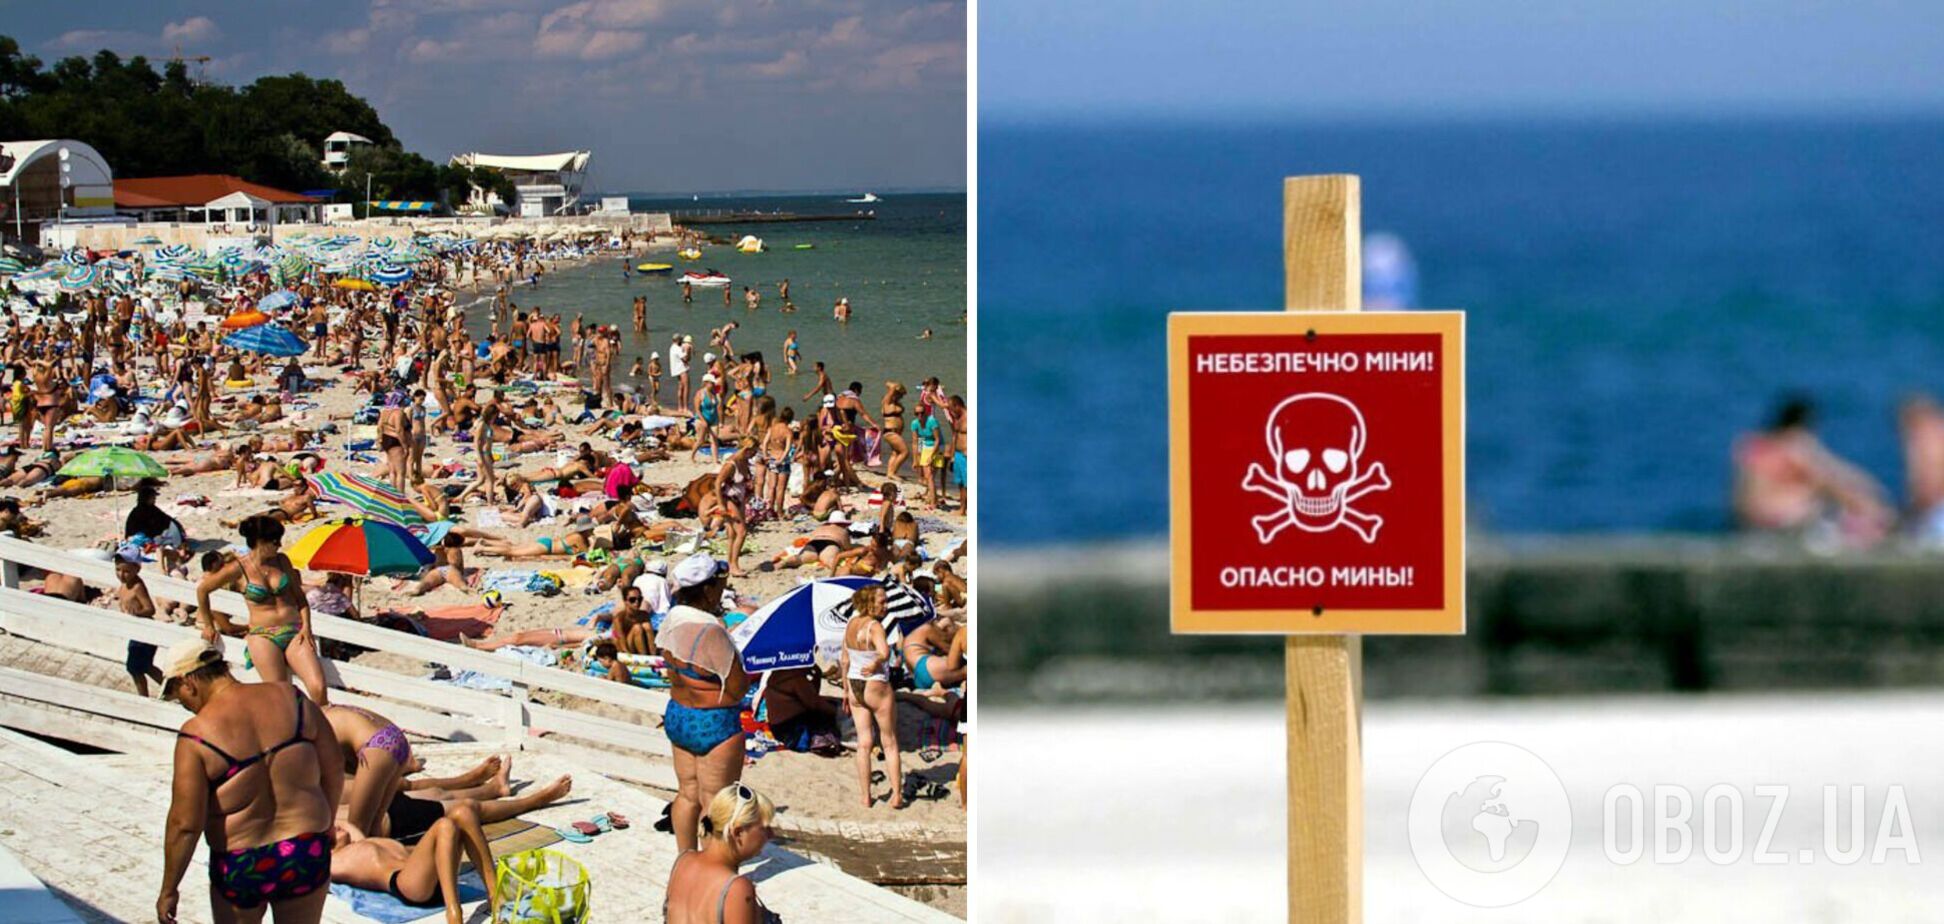 В Одессе, несмотря на предупреждение о минировании, пляжи заполнены отдыхающими. Фотофакт